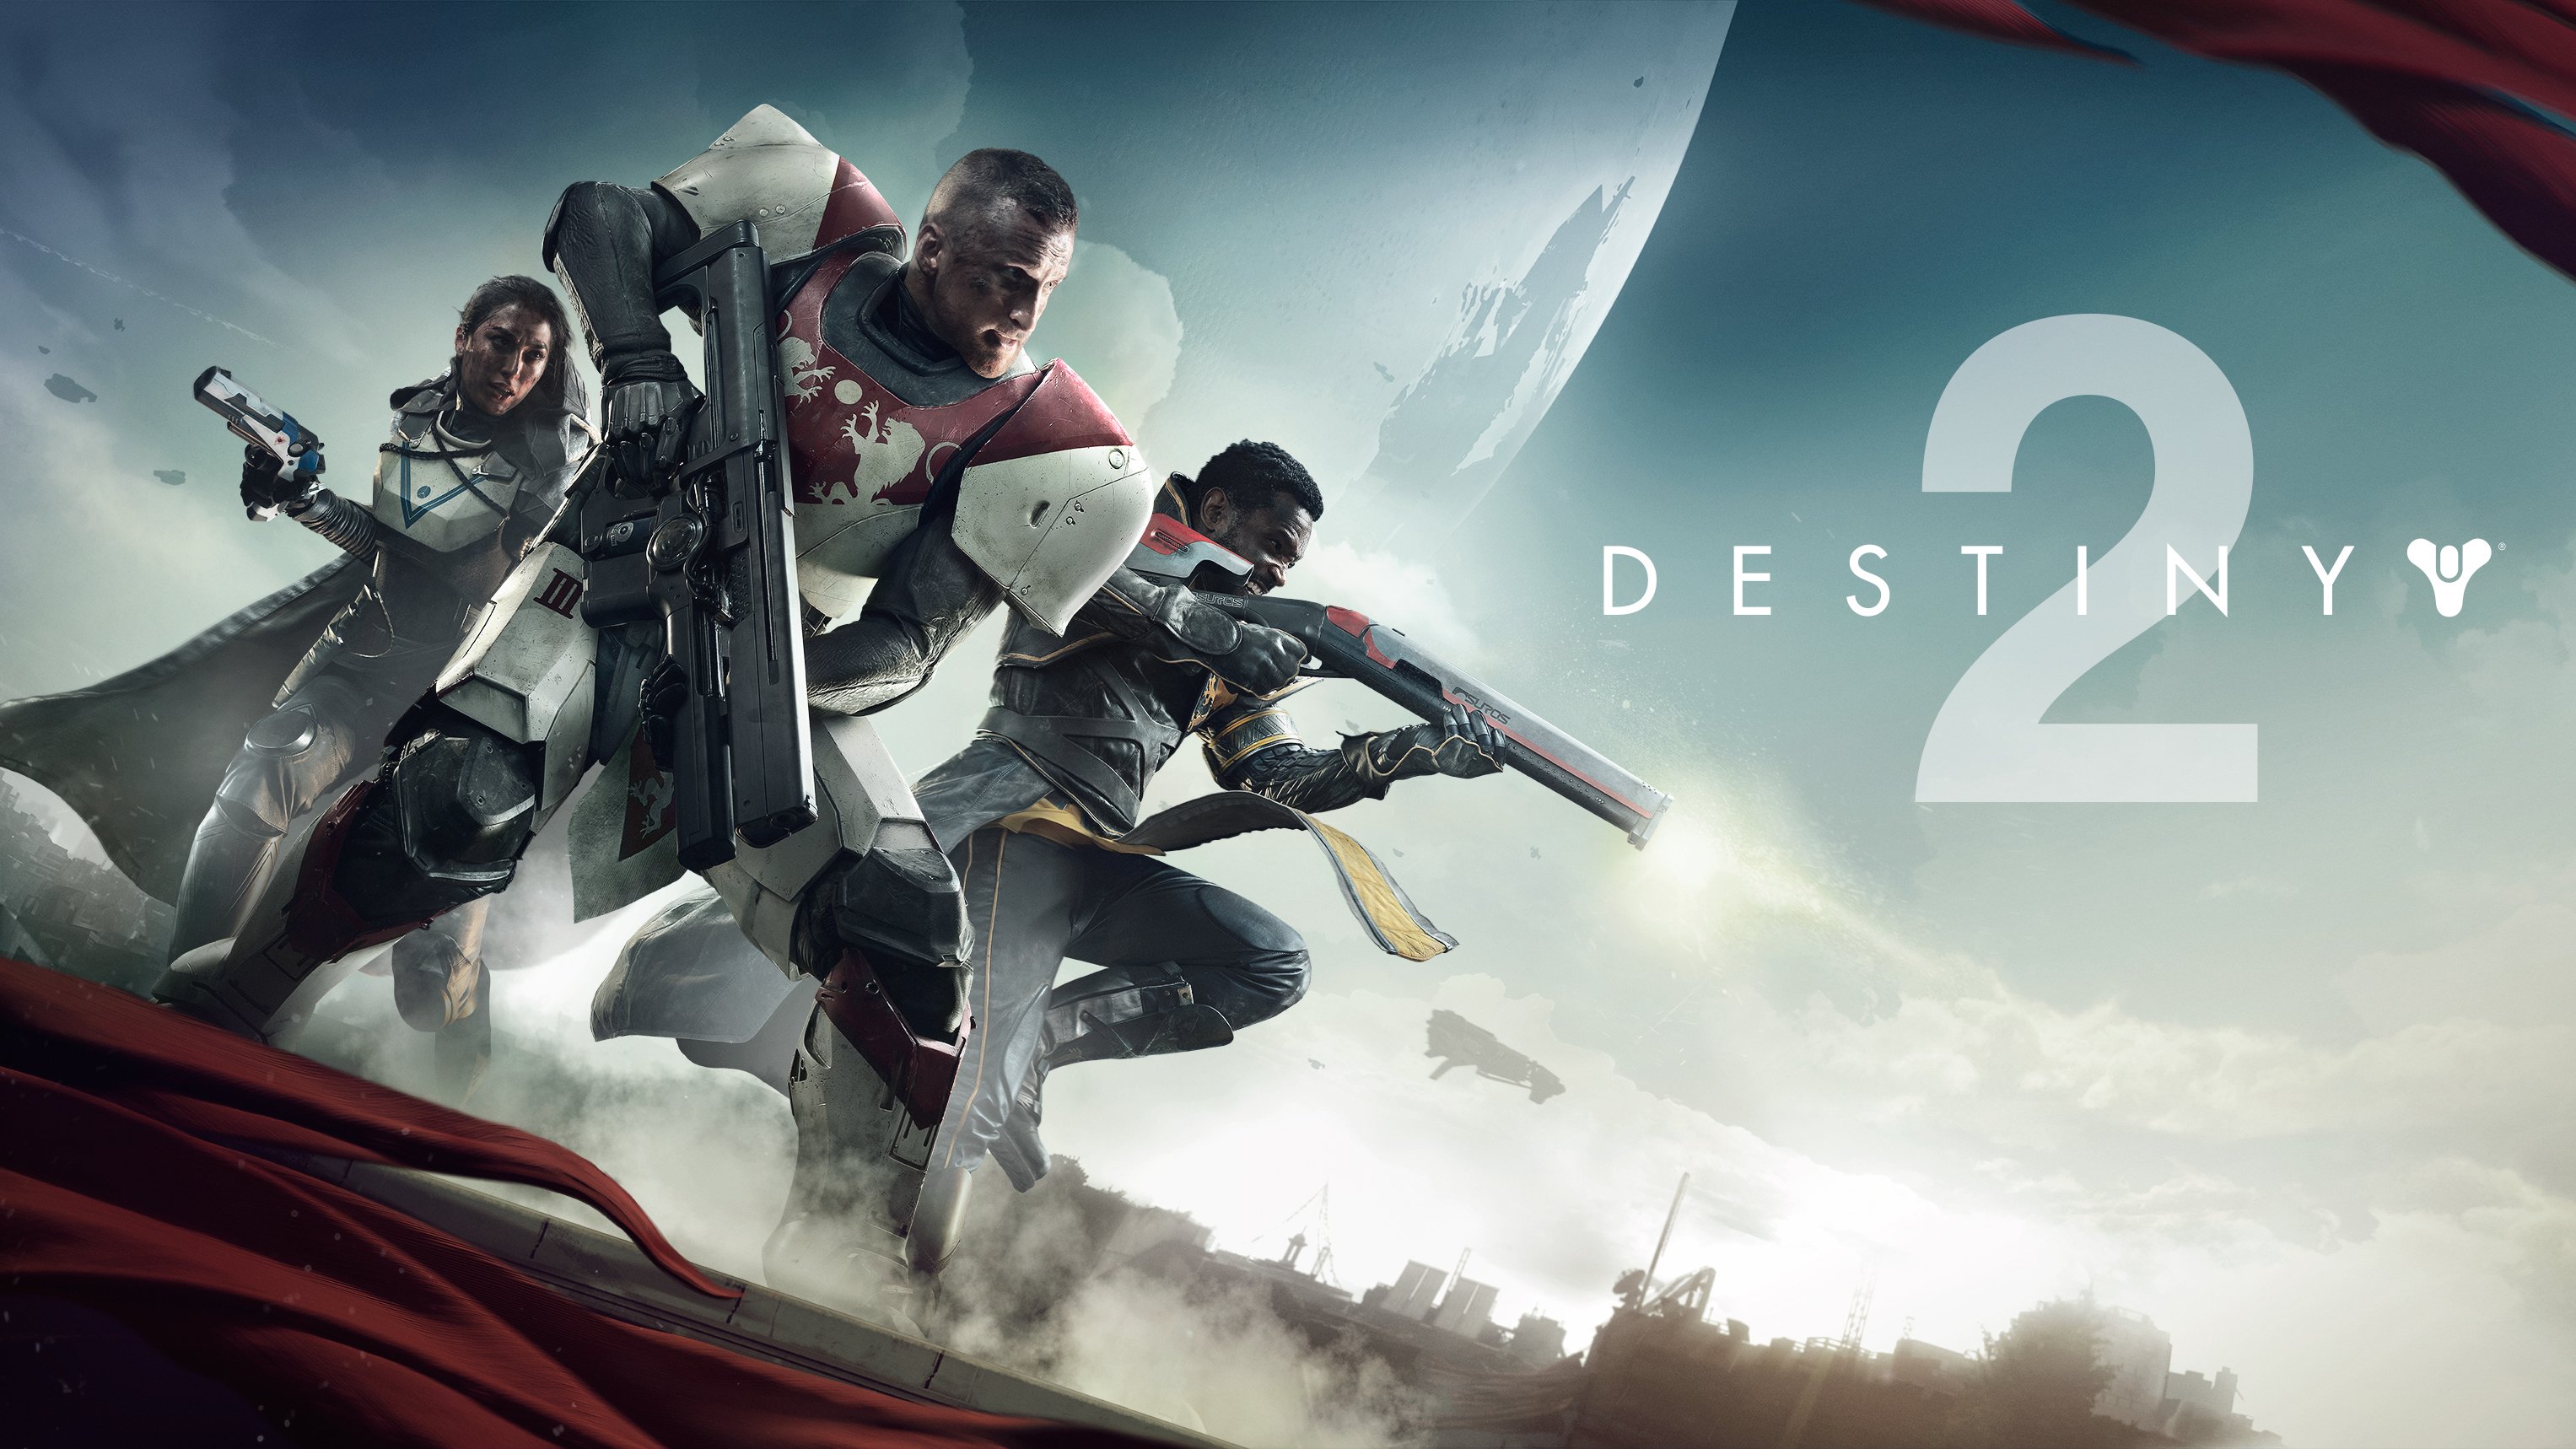 destiny 2, video game, destiny